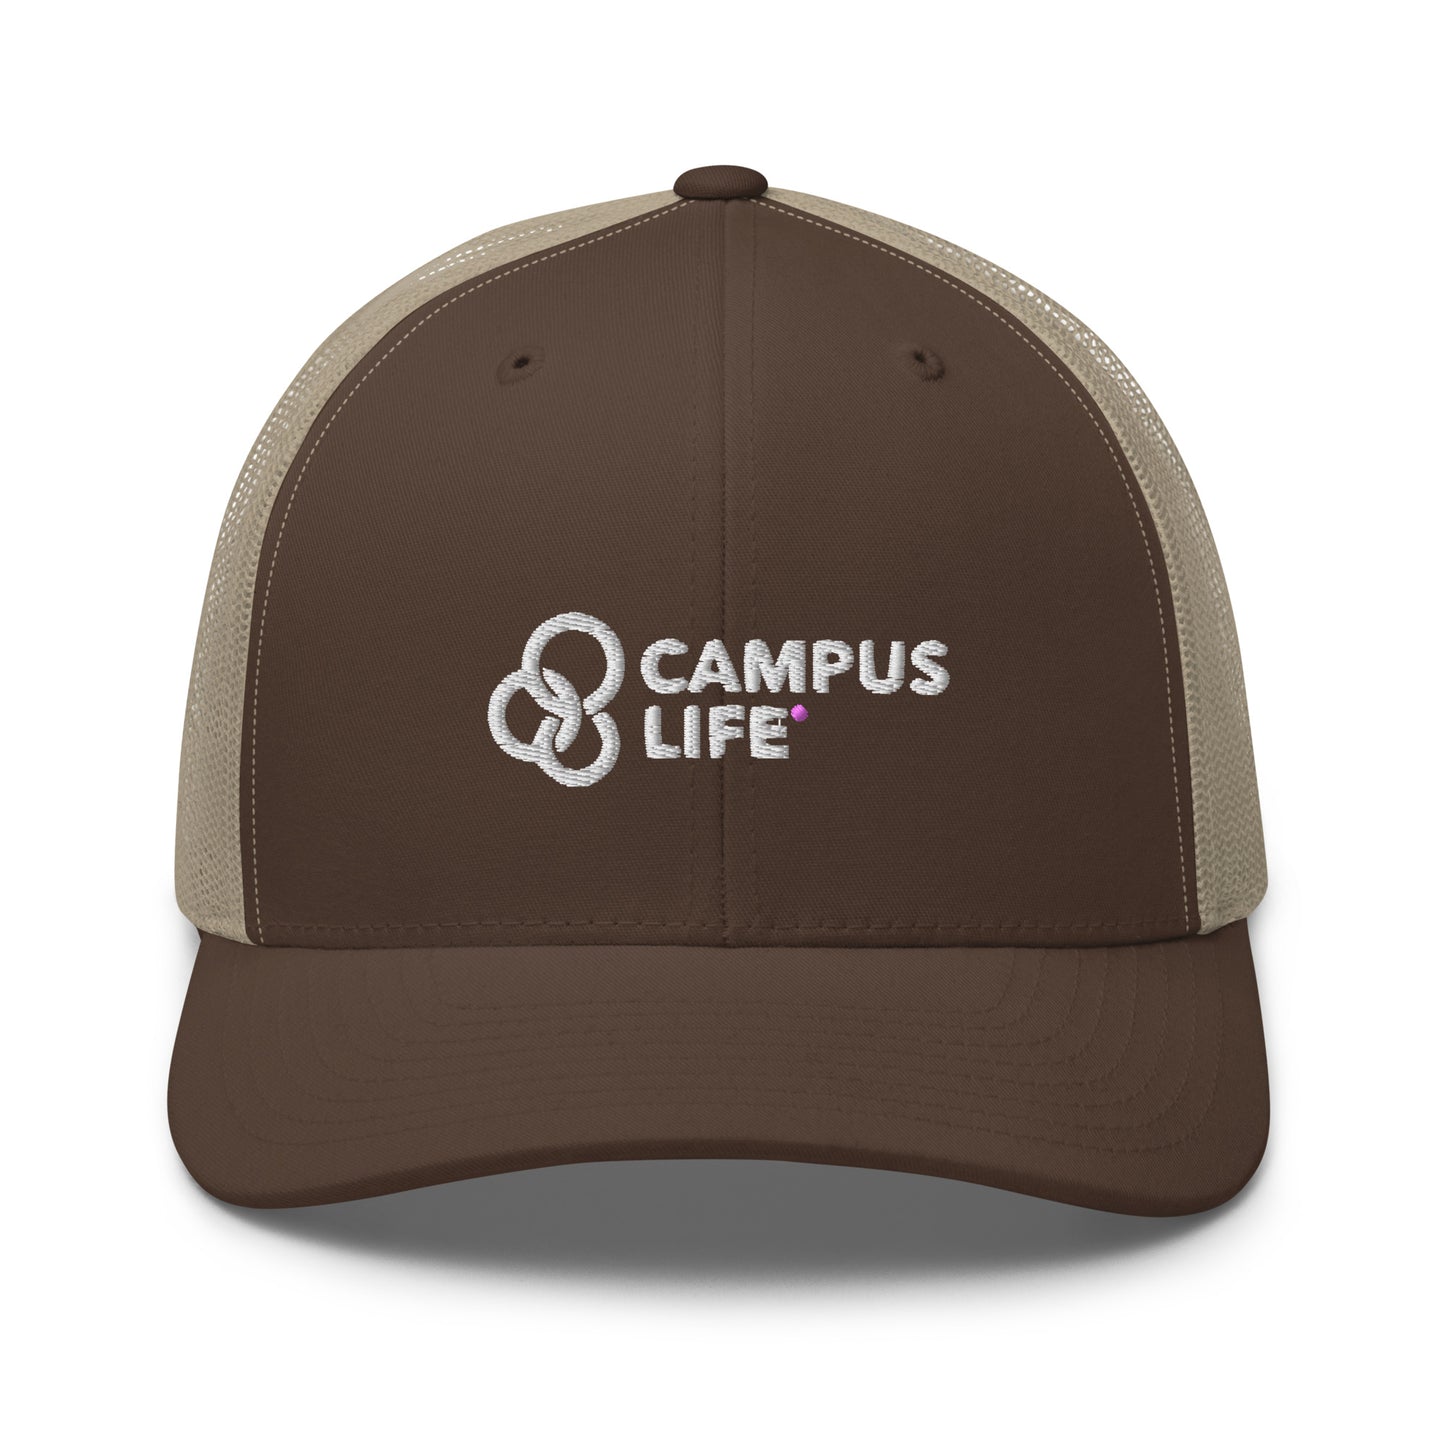 Campus Life Trucker Cap